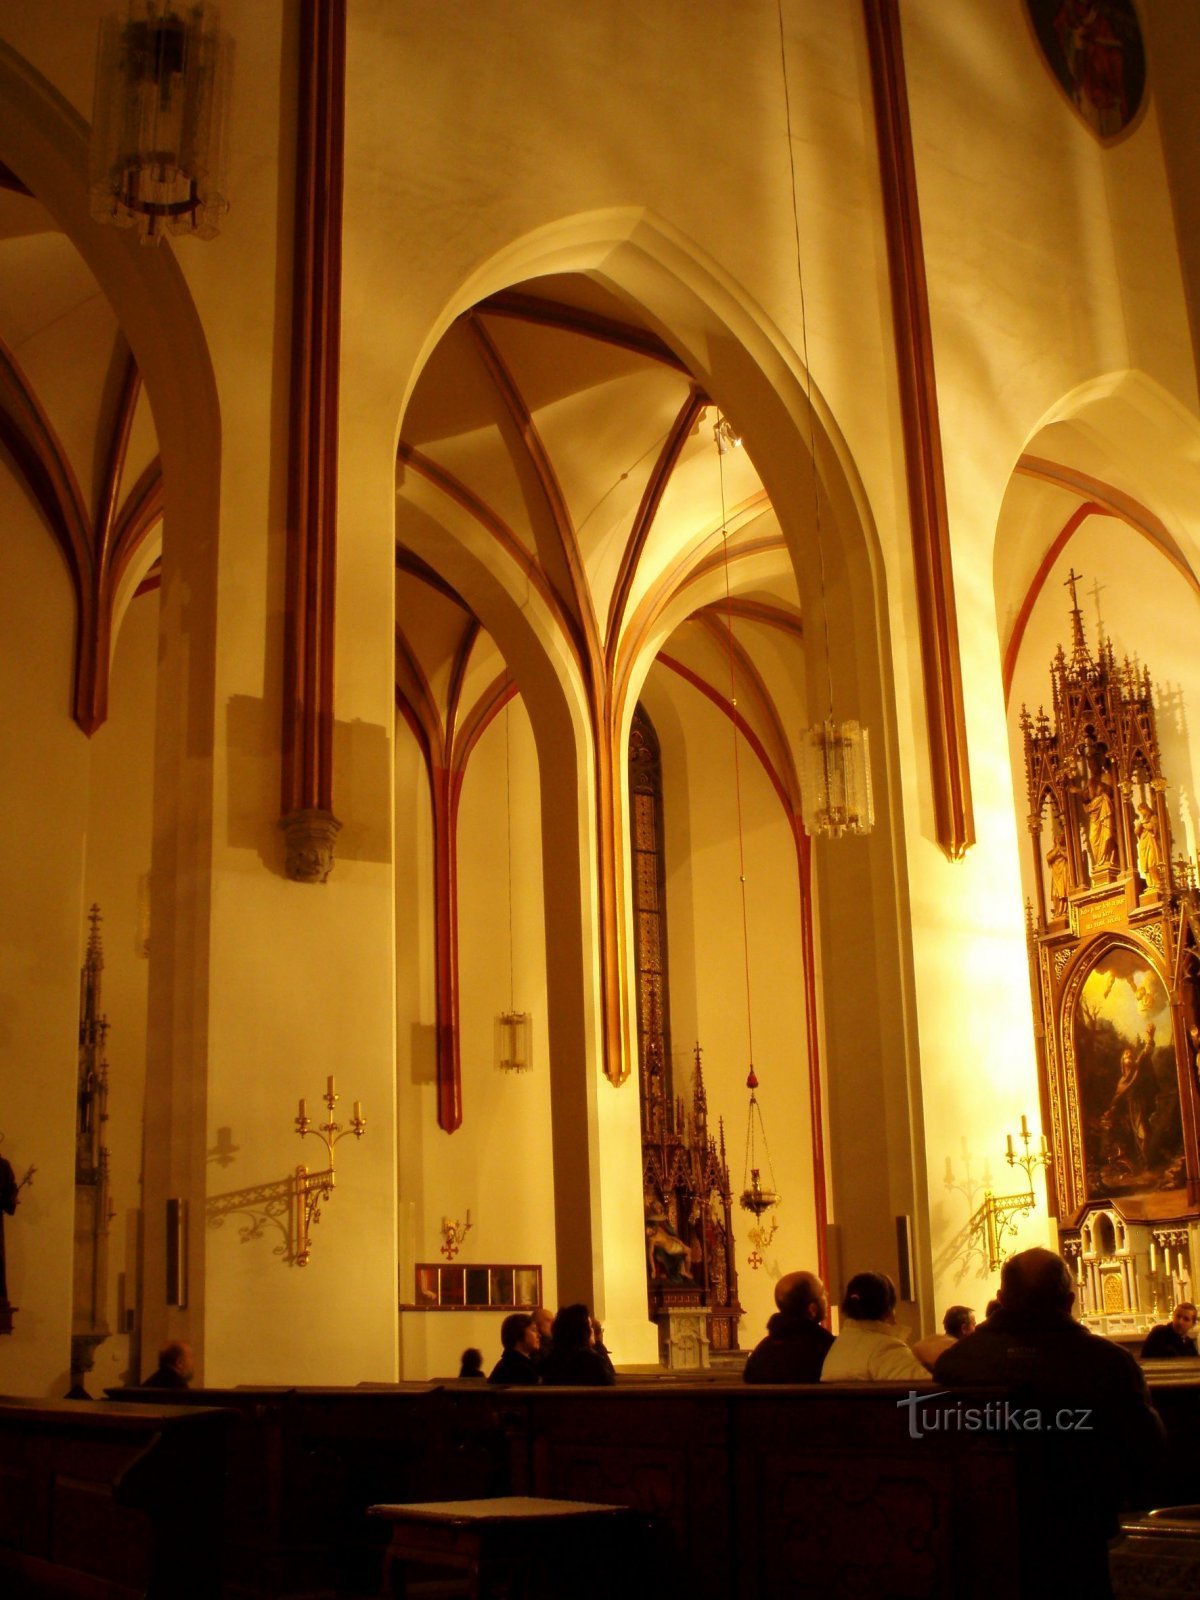 Innenraum der Kathedrale von St. Geist mit dem Altar von St. Antonín Poustevník in der rechten Ecke (H